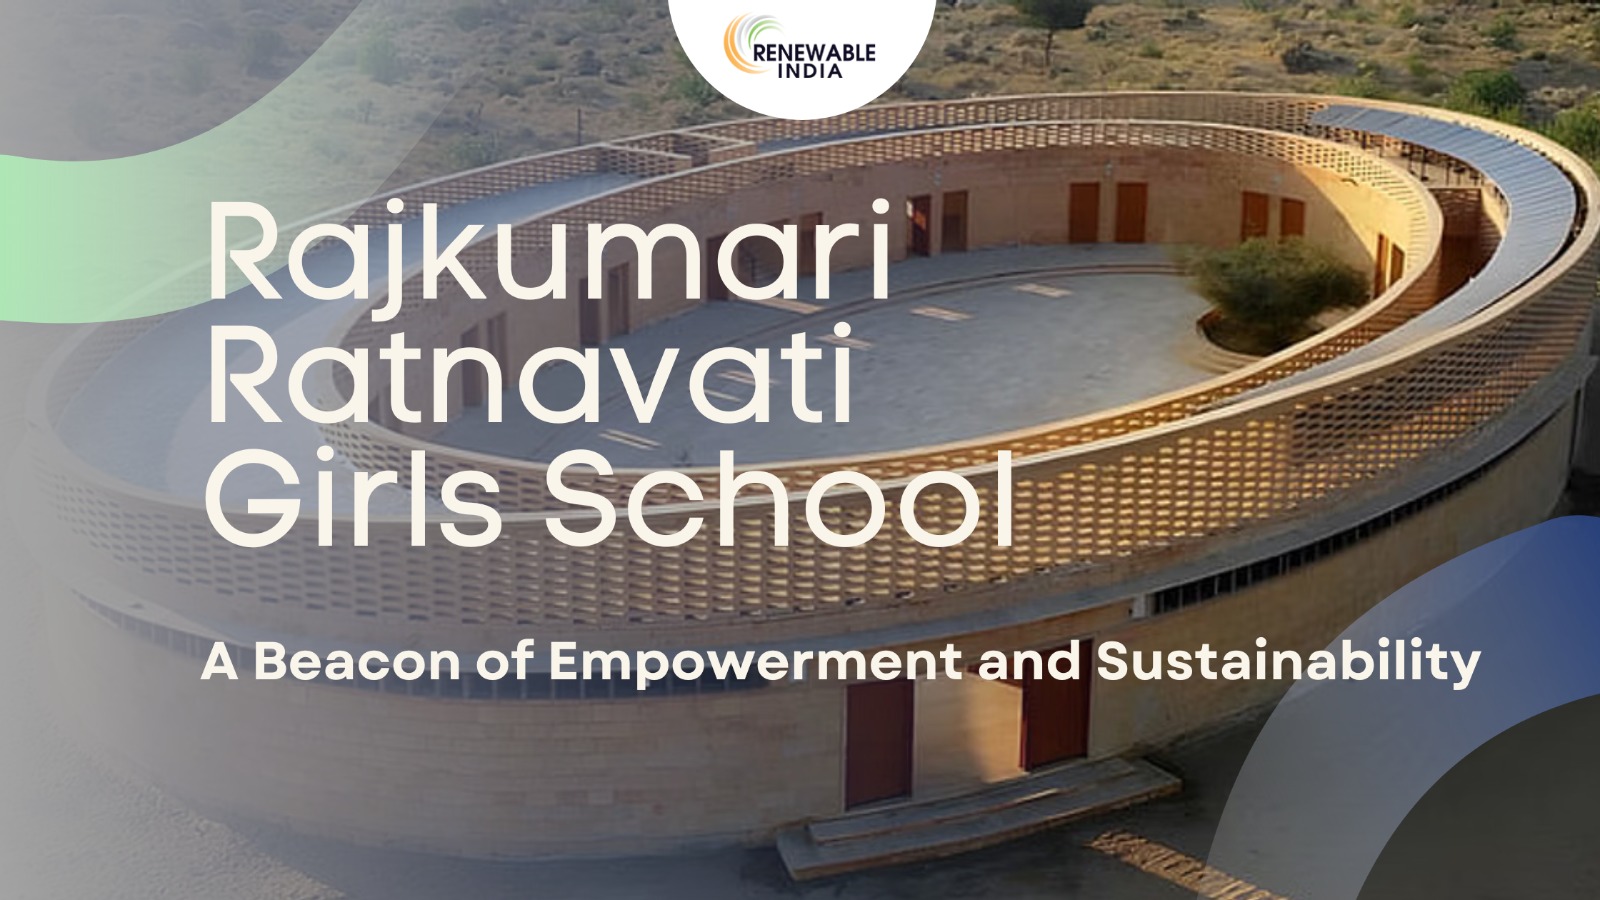 Rajkumari Ratnavati Girls School: Empowering Education in Harmony with Nature